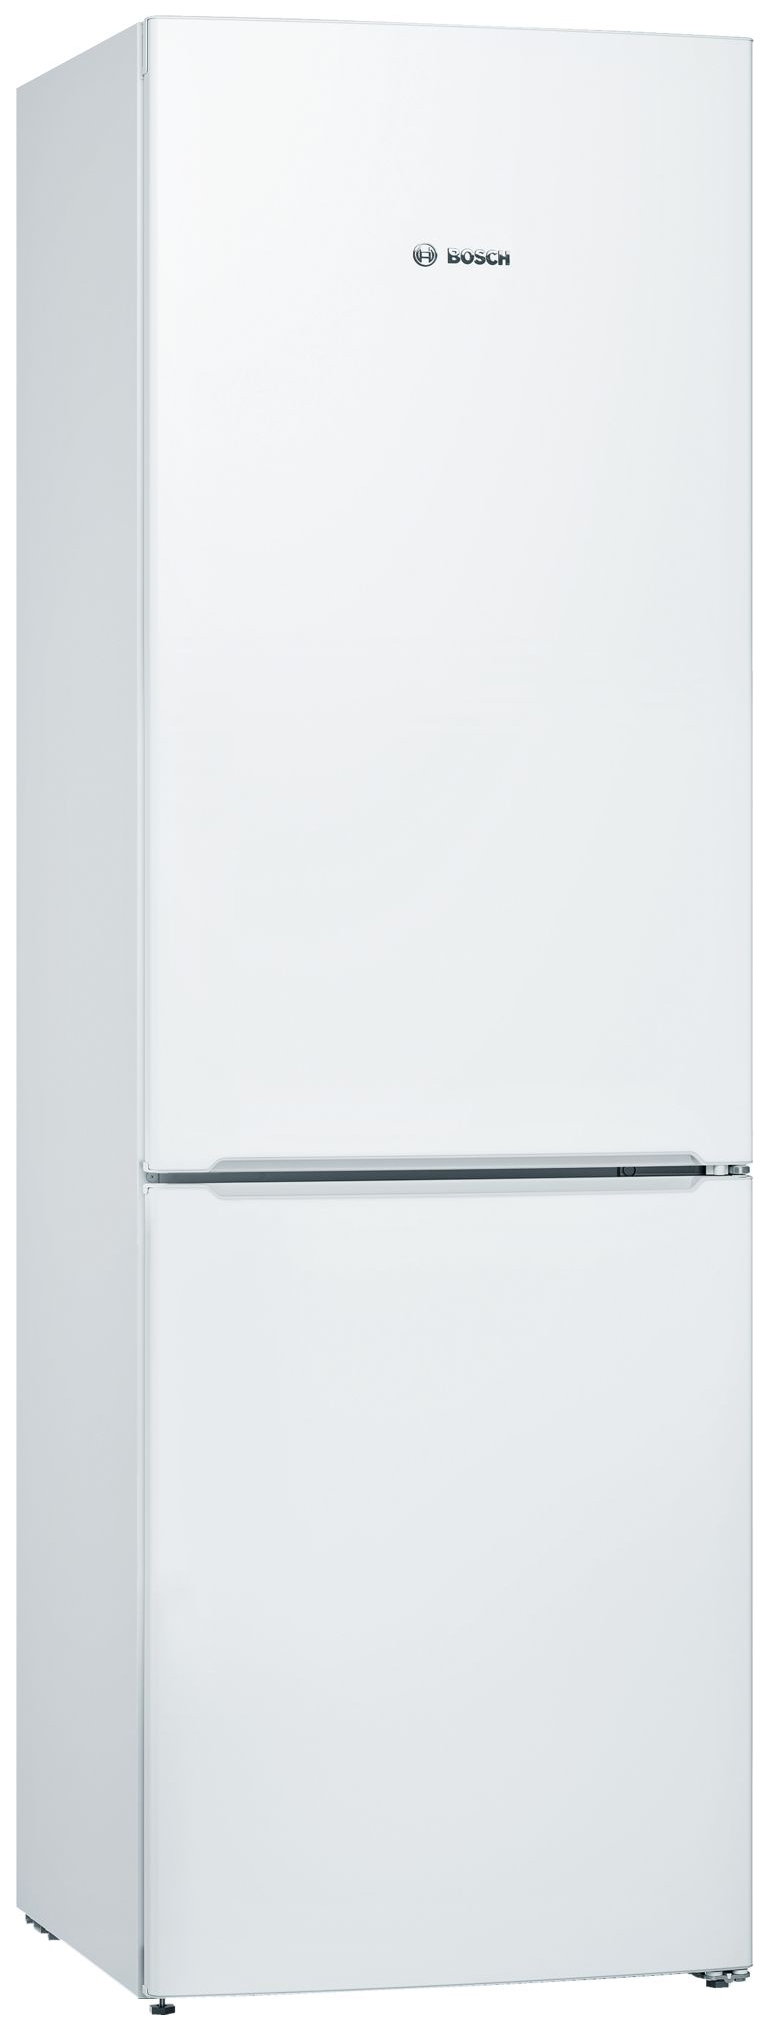 Холодильник Bosch KGV36NW1AR белый навесная панель на двухкамерный холодильник bosch variostyle kgn 39 ij 3 ar со сменной панелью вишневый